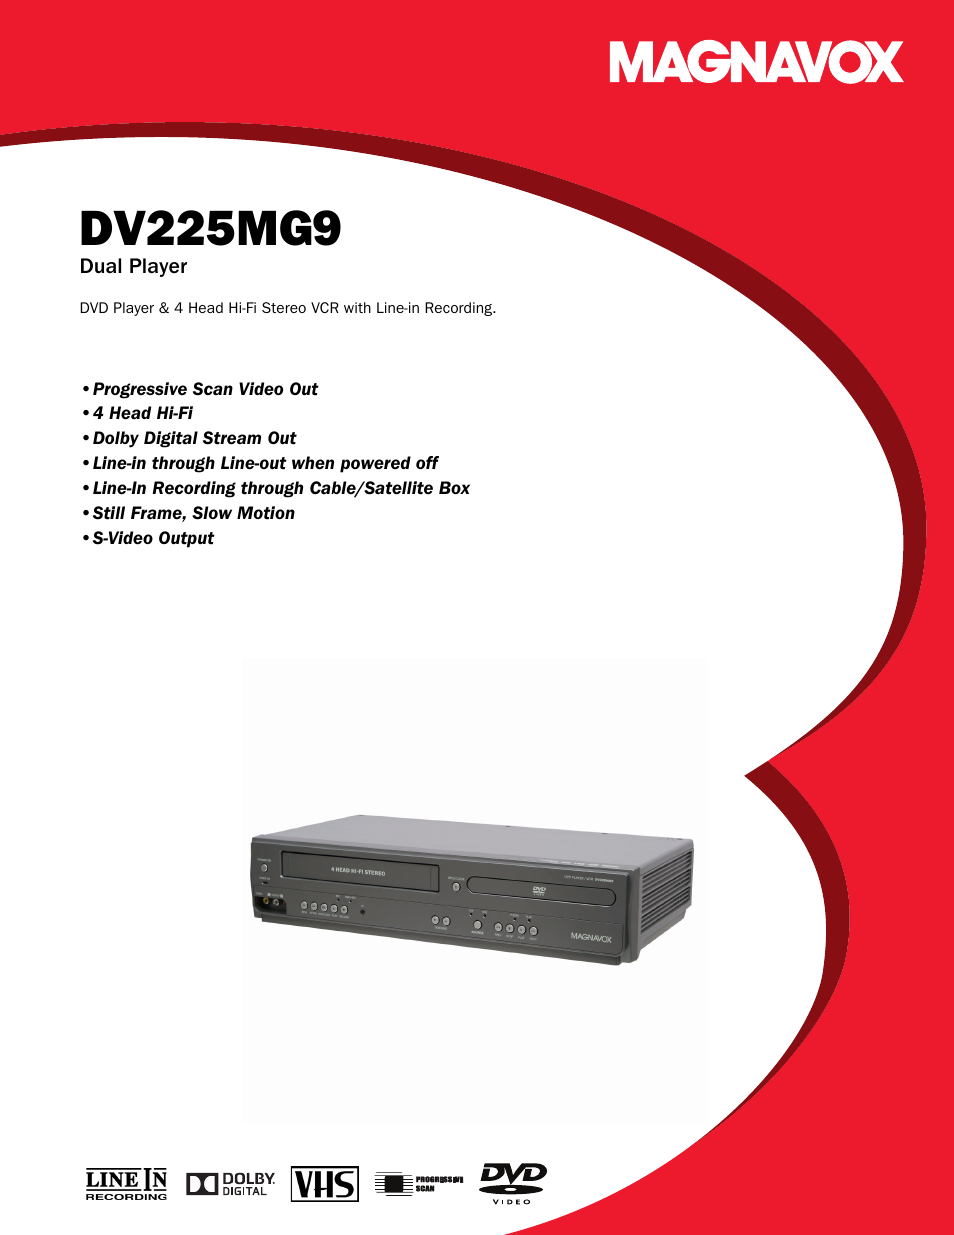 Dual Player DV225MG9